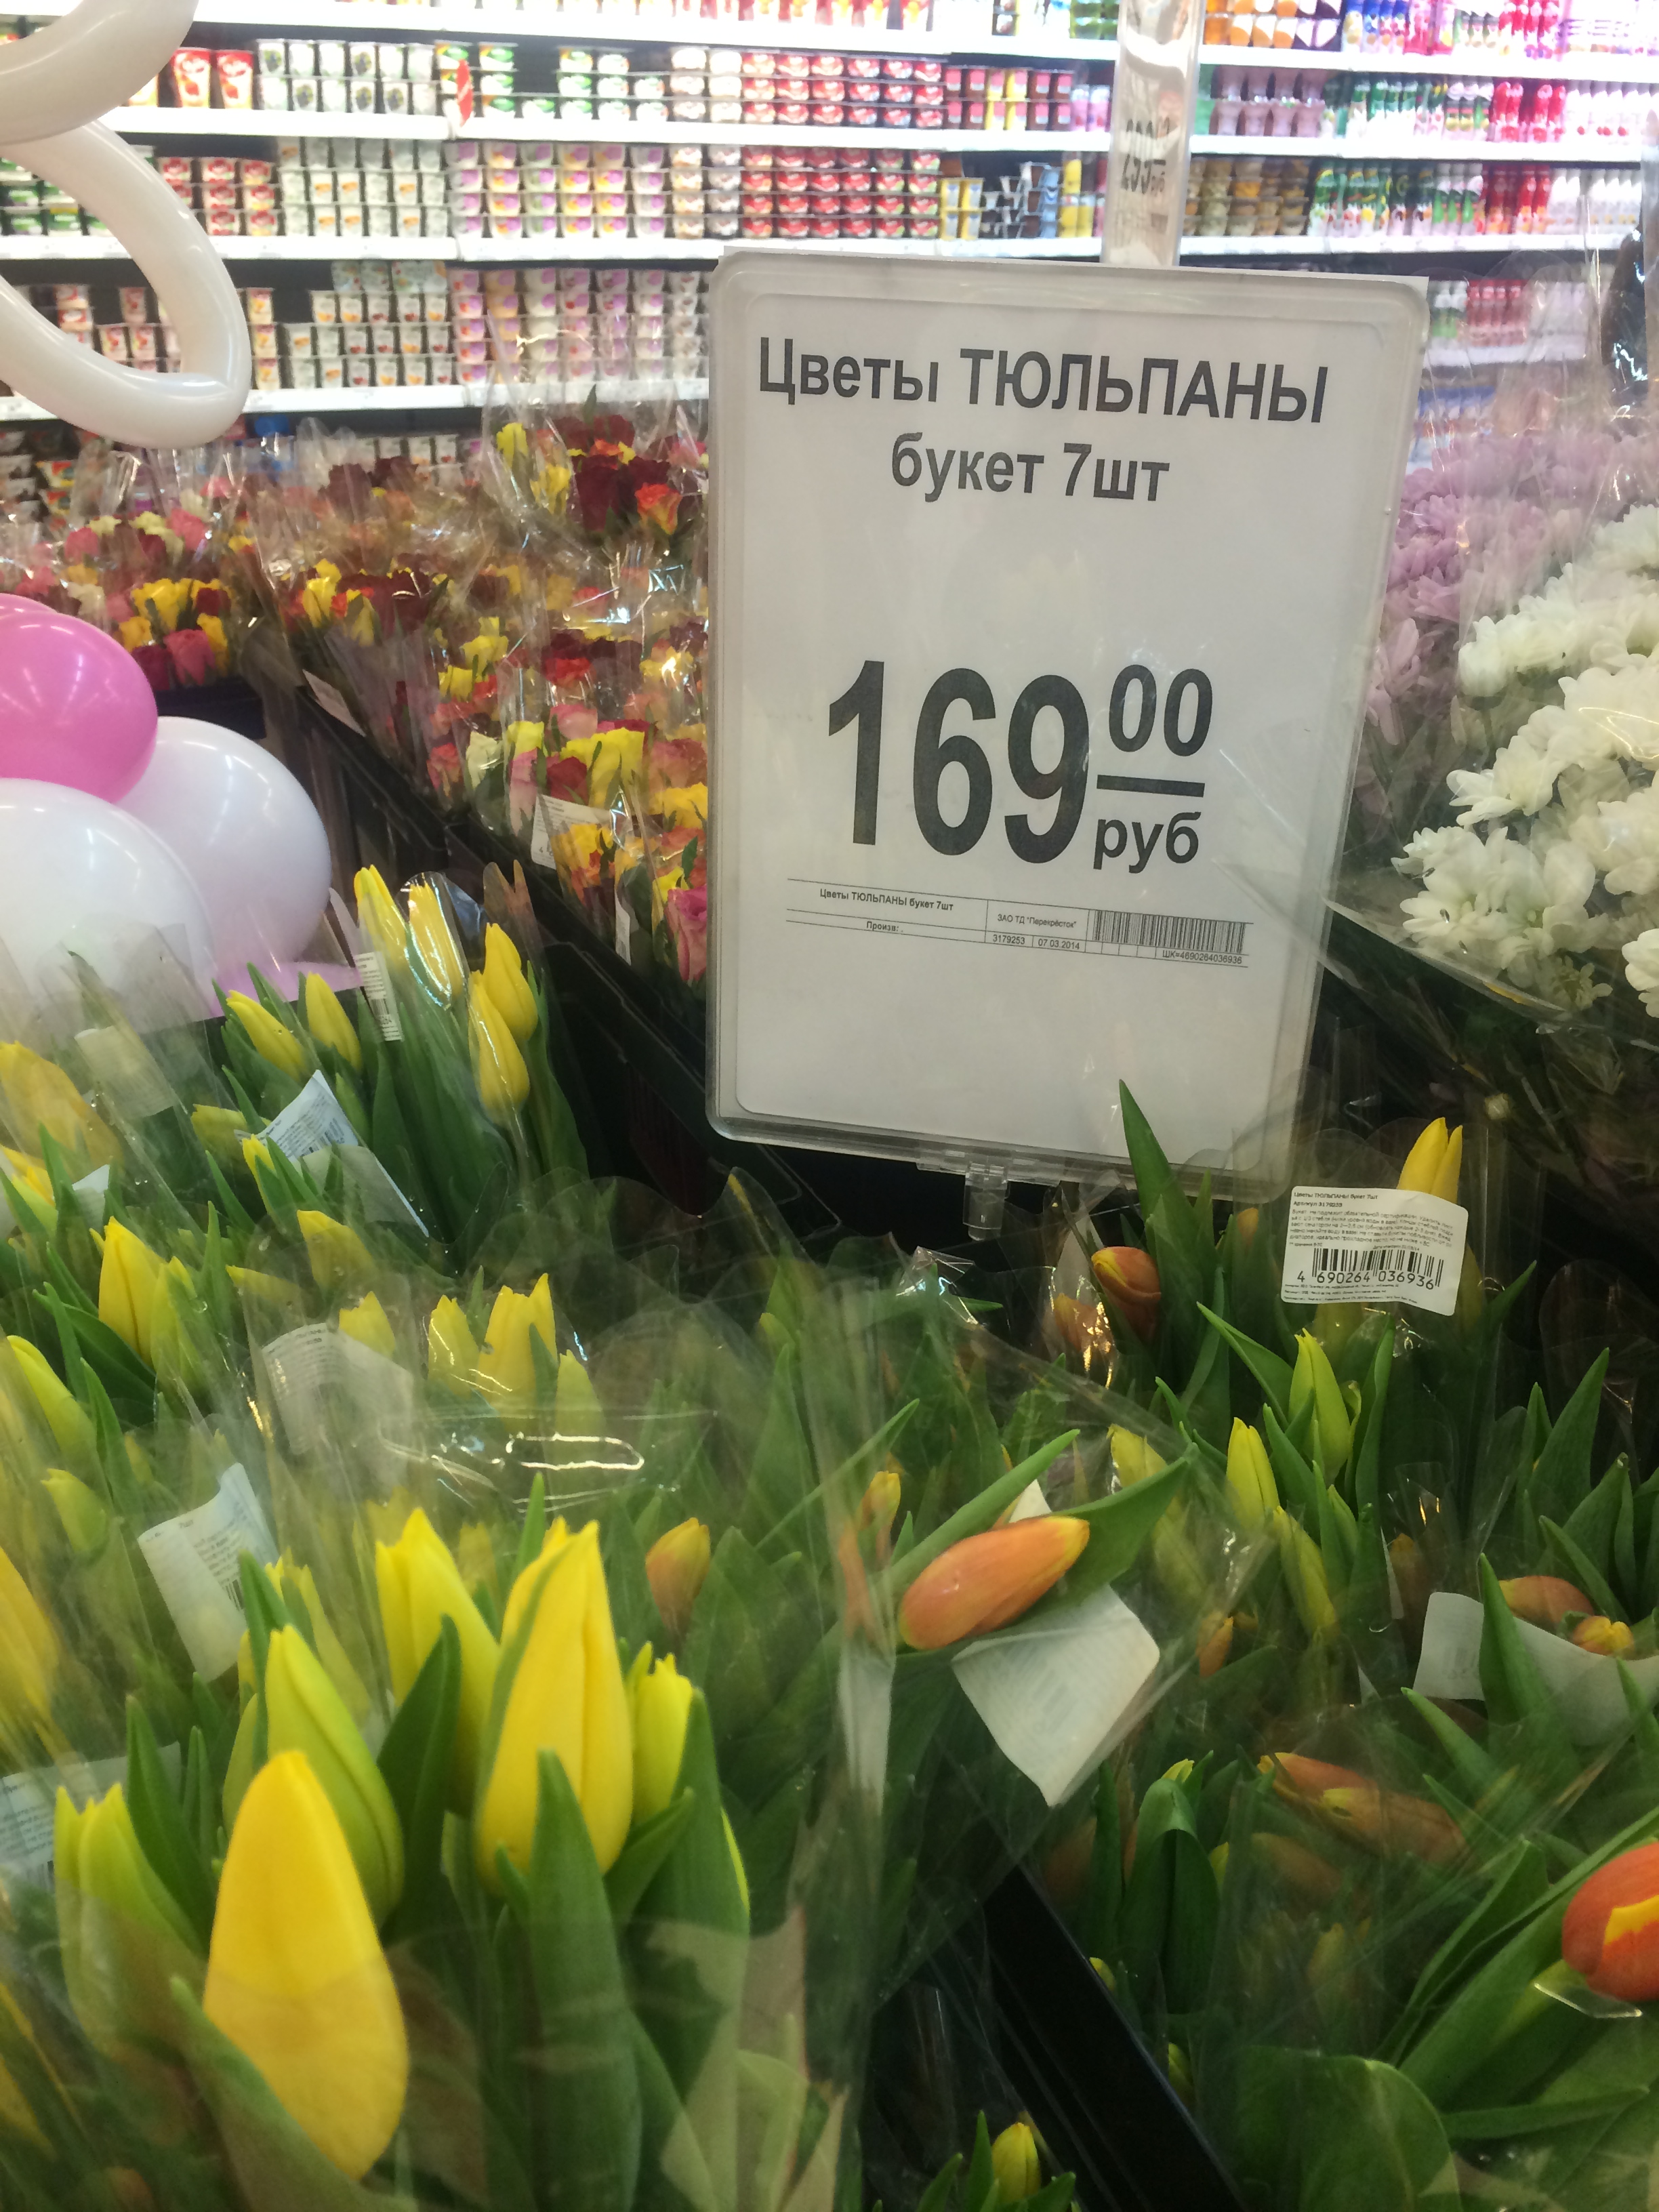 Сколько стоят тюльпаны на рынке. Тюльпаны в цветочном магазине. Ценники для цветочного магазина. Тюльпаны супермаркет. Цветы в супермаркете.